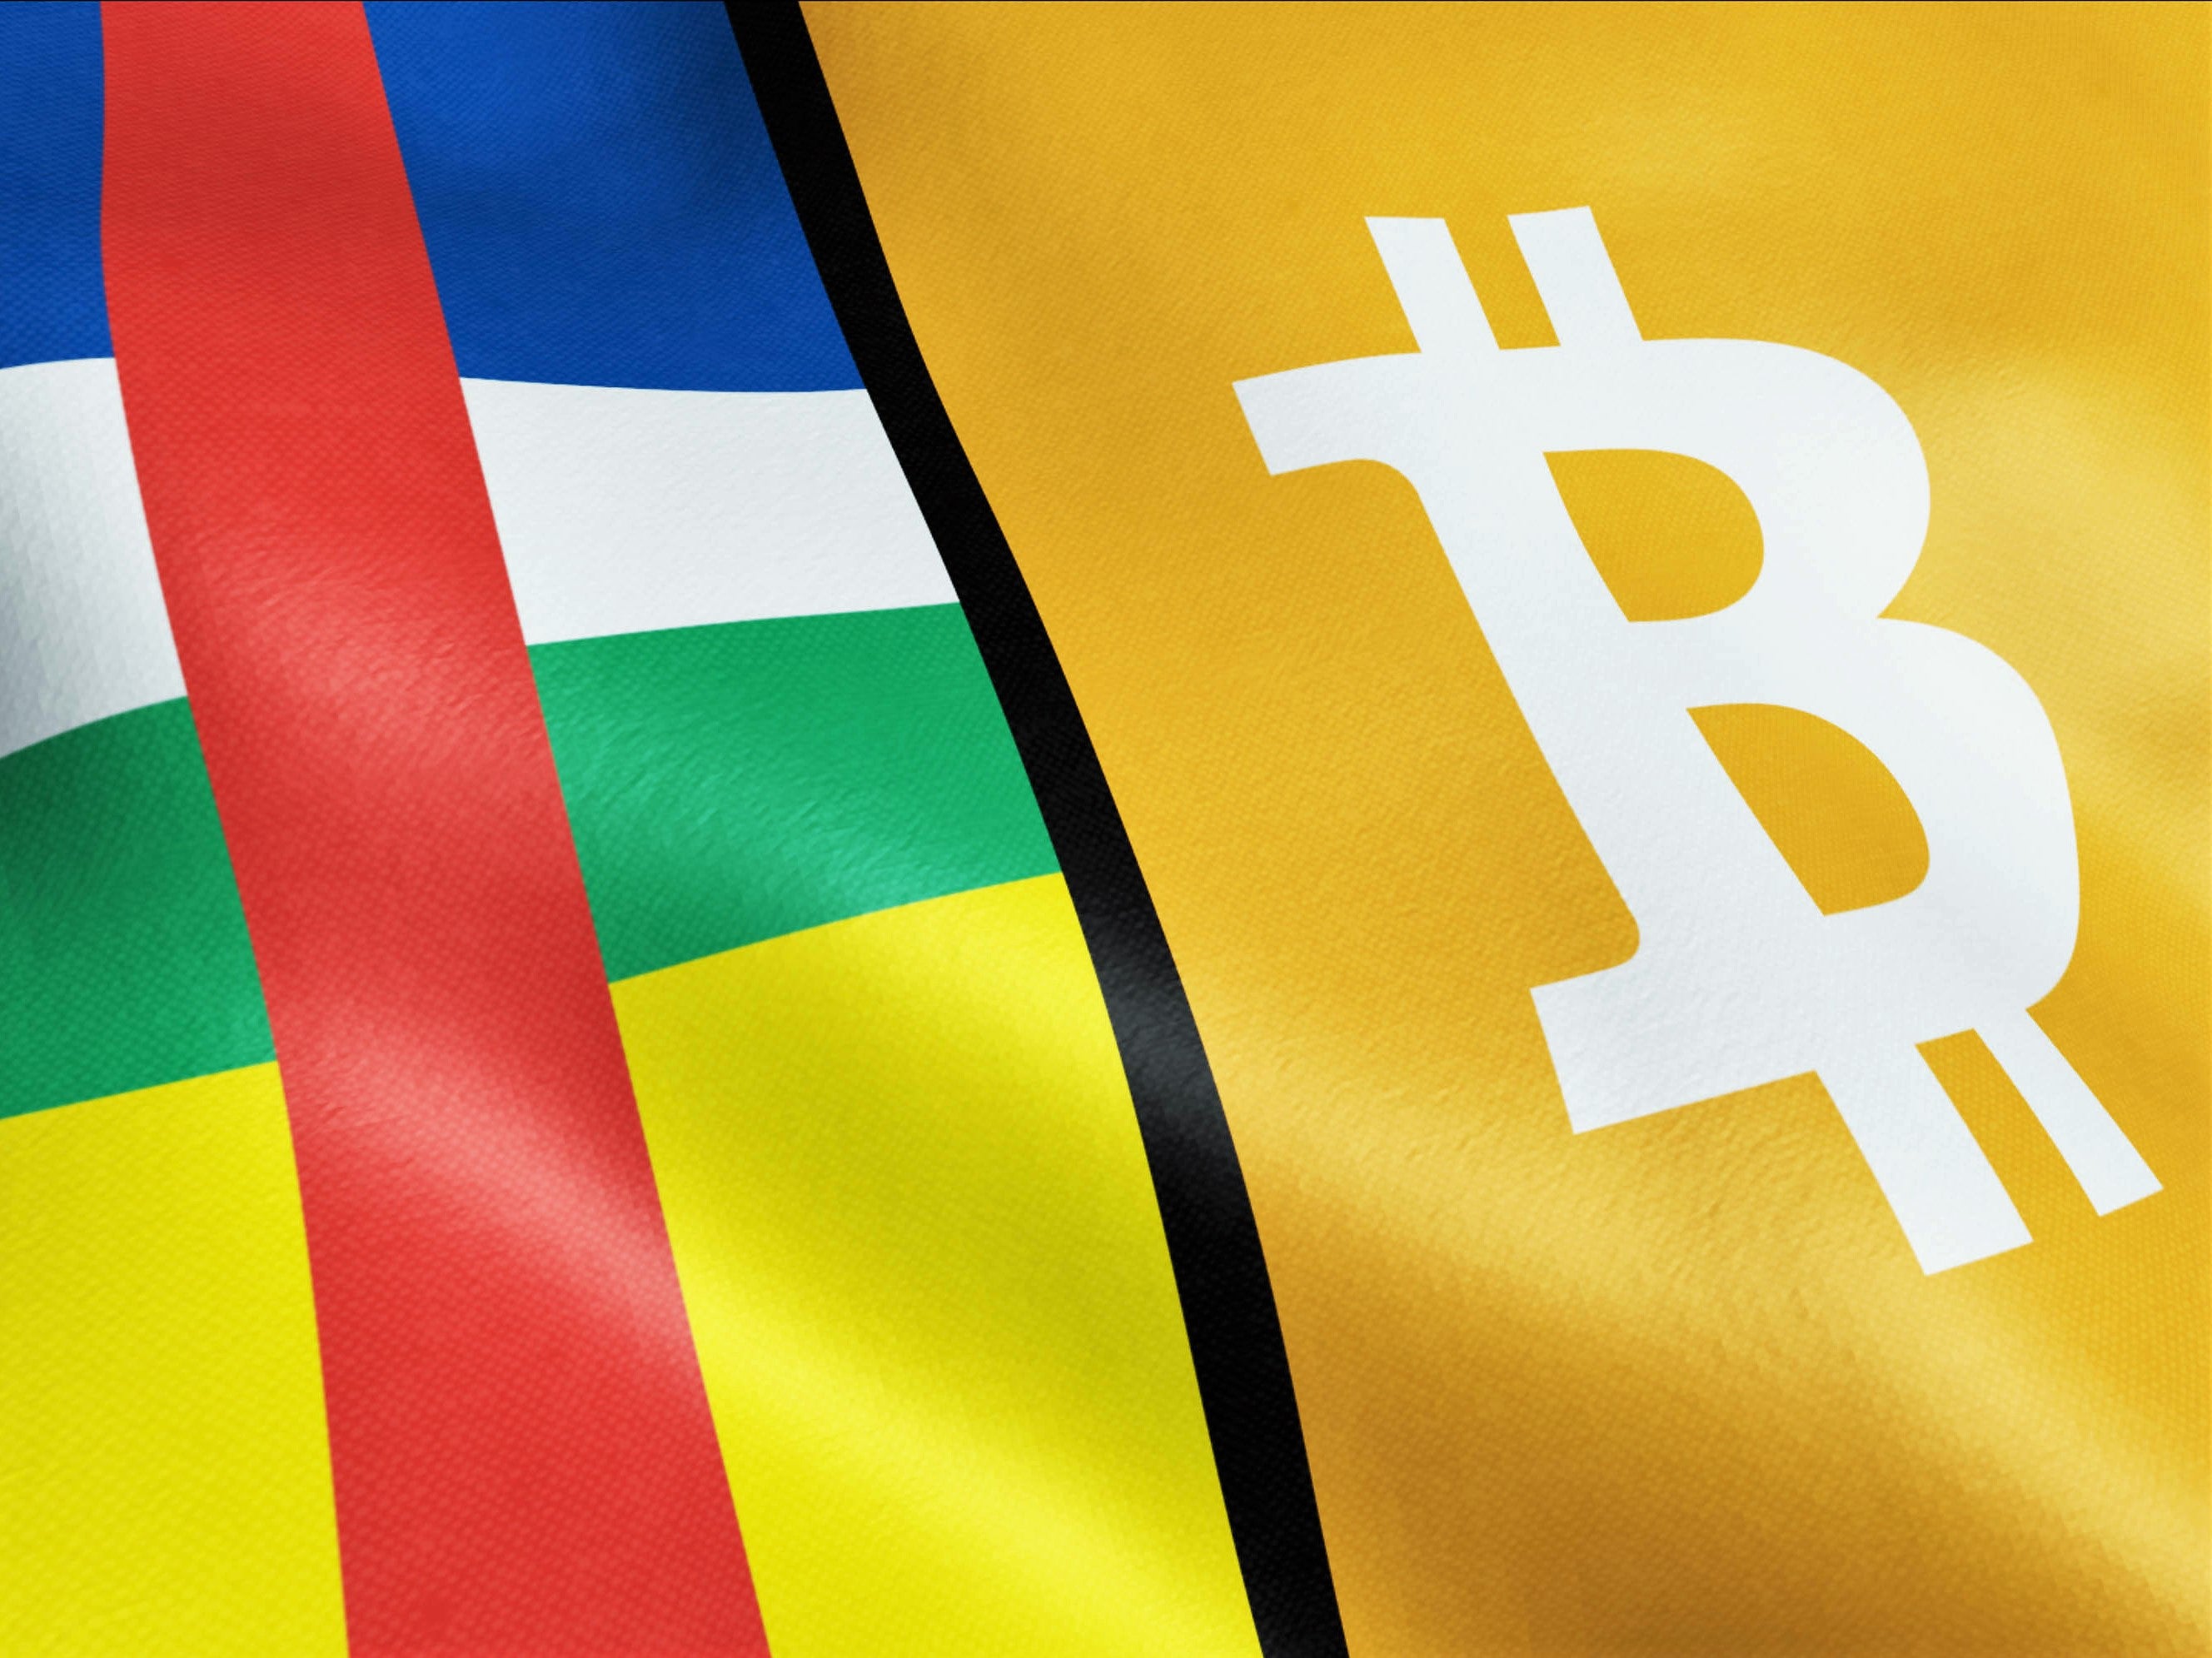 Los legisladores de la República Centroafricana votaron de manera unánime para introducir el Bitcoin como una moneda legal